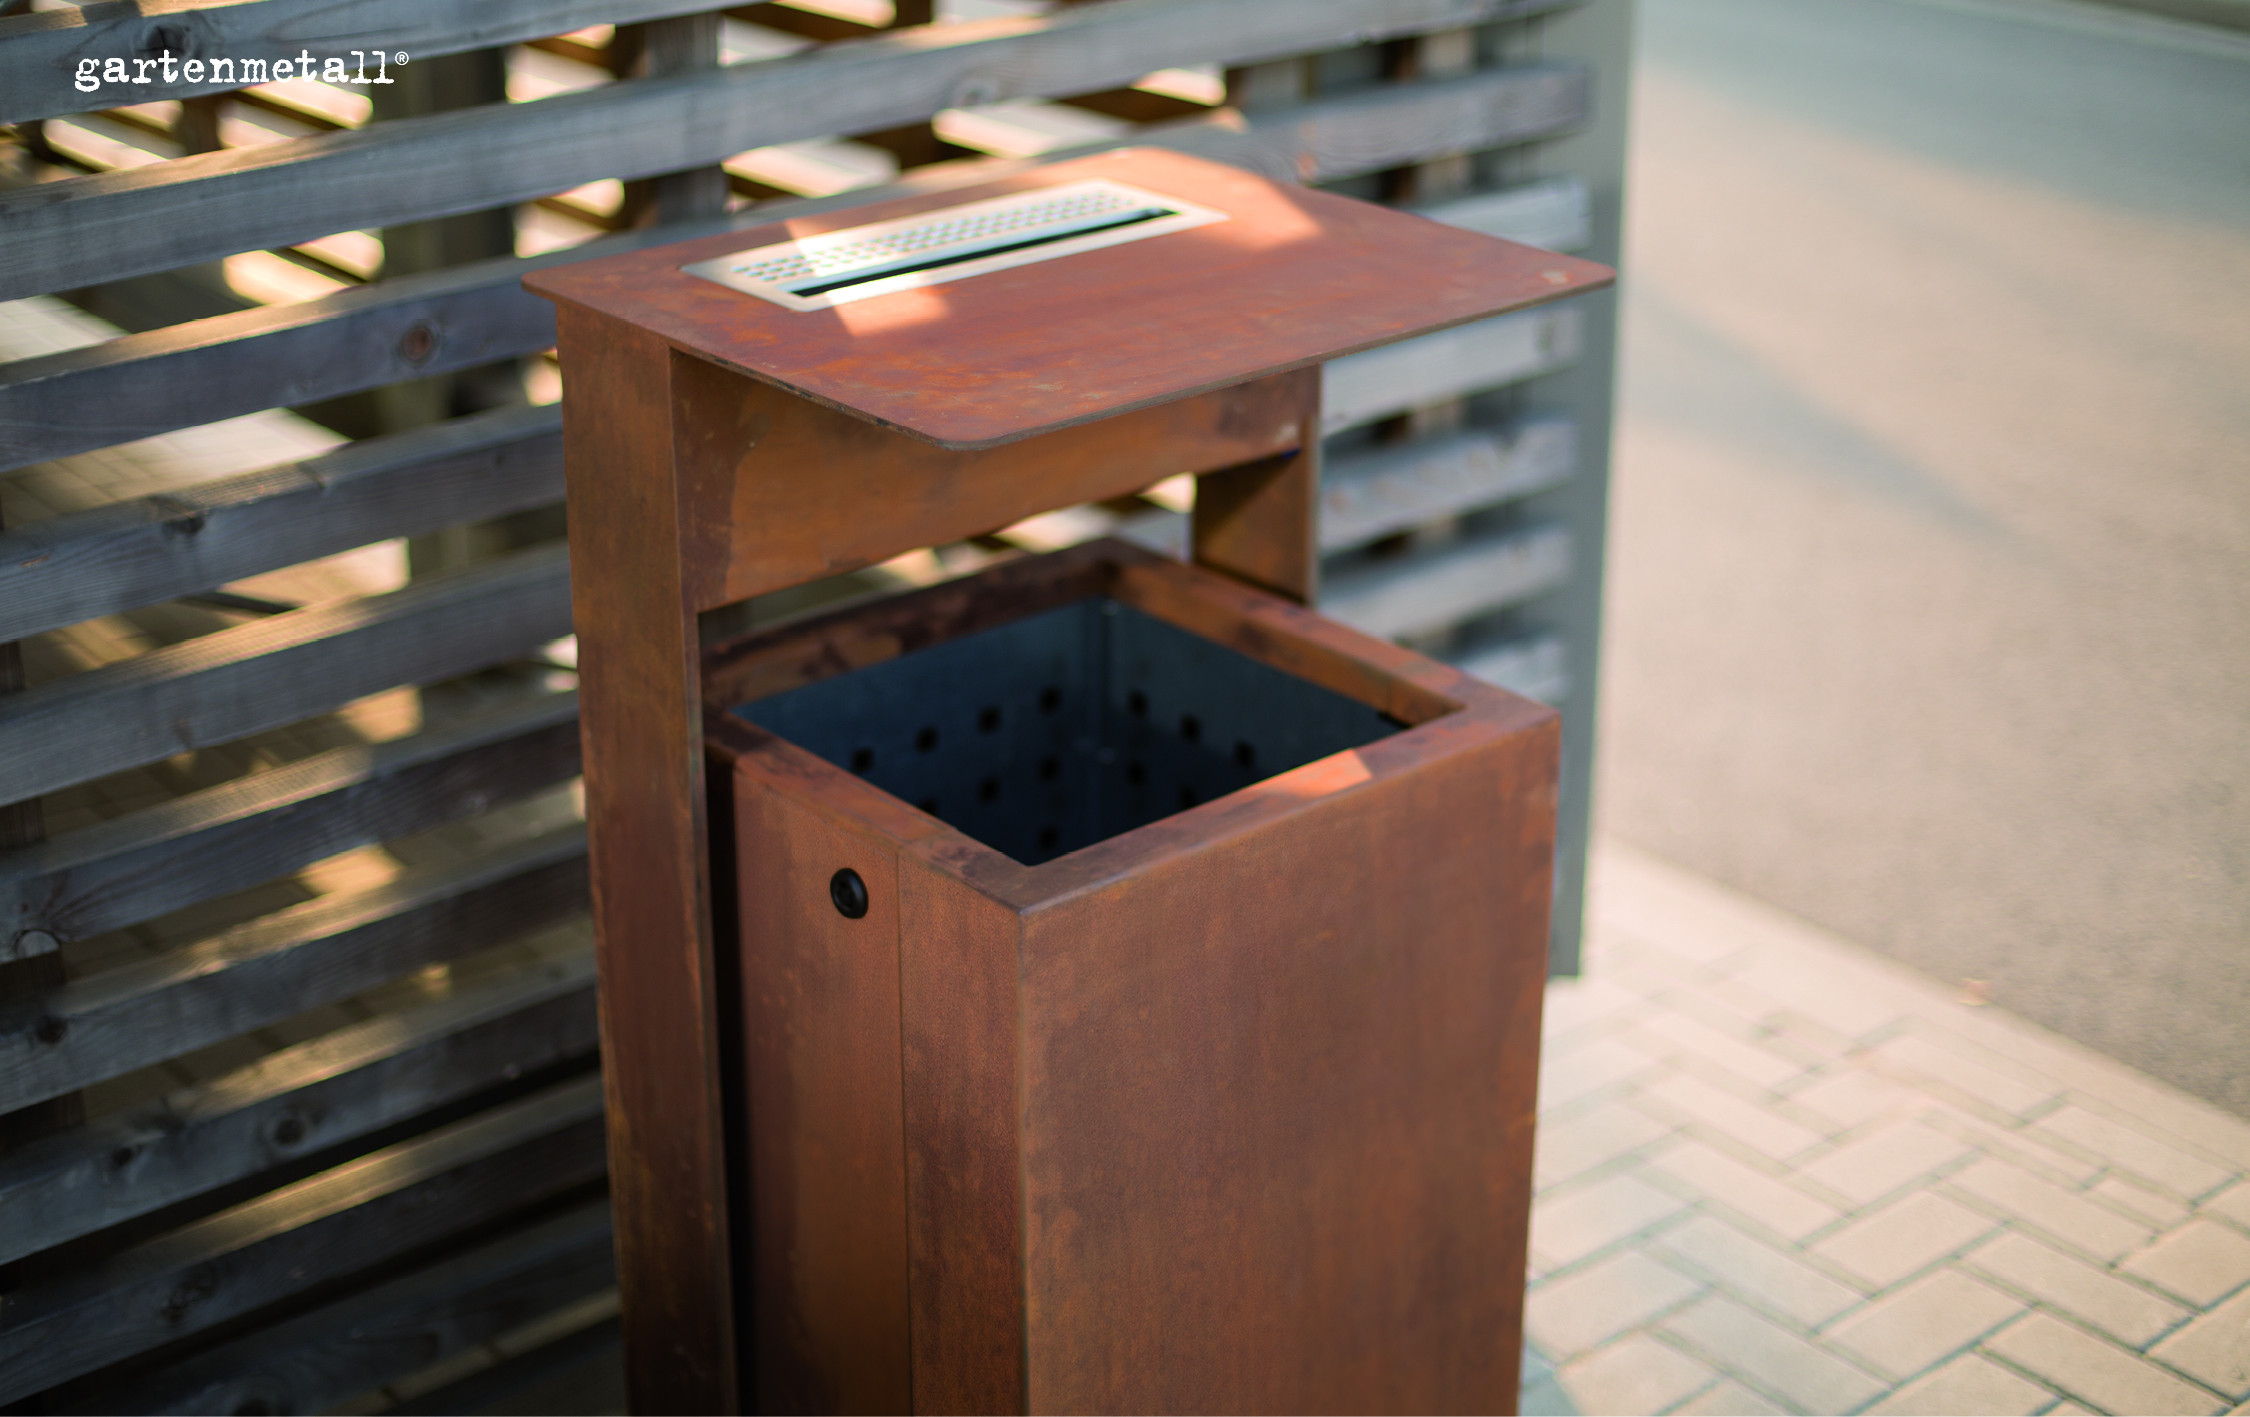 Abfallbehälter mit integriertem Aschenbecher im öffentlichen Raum